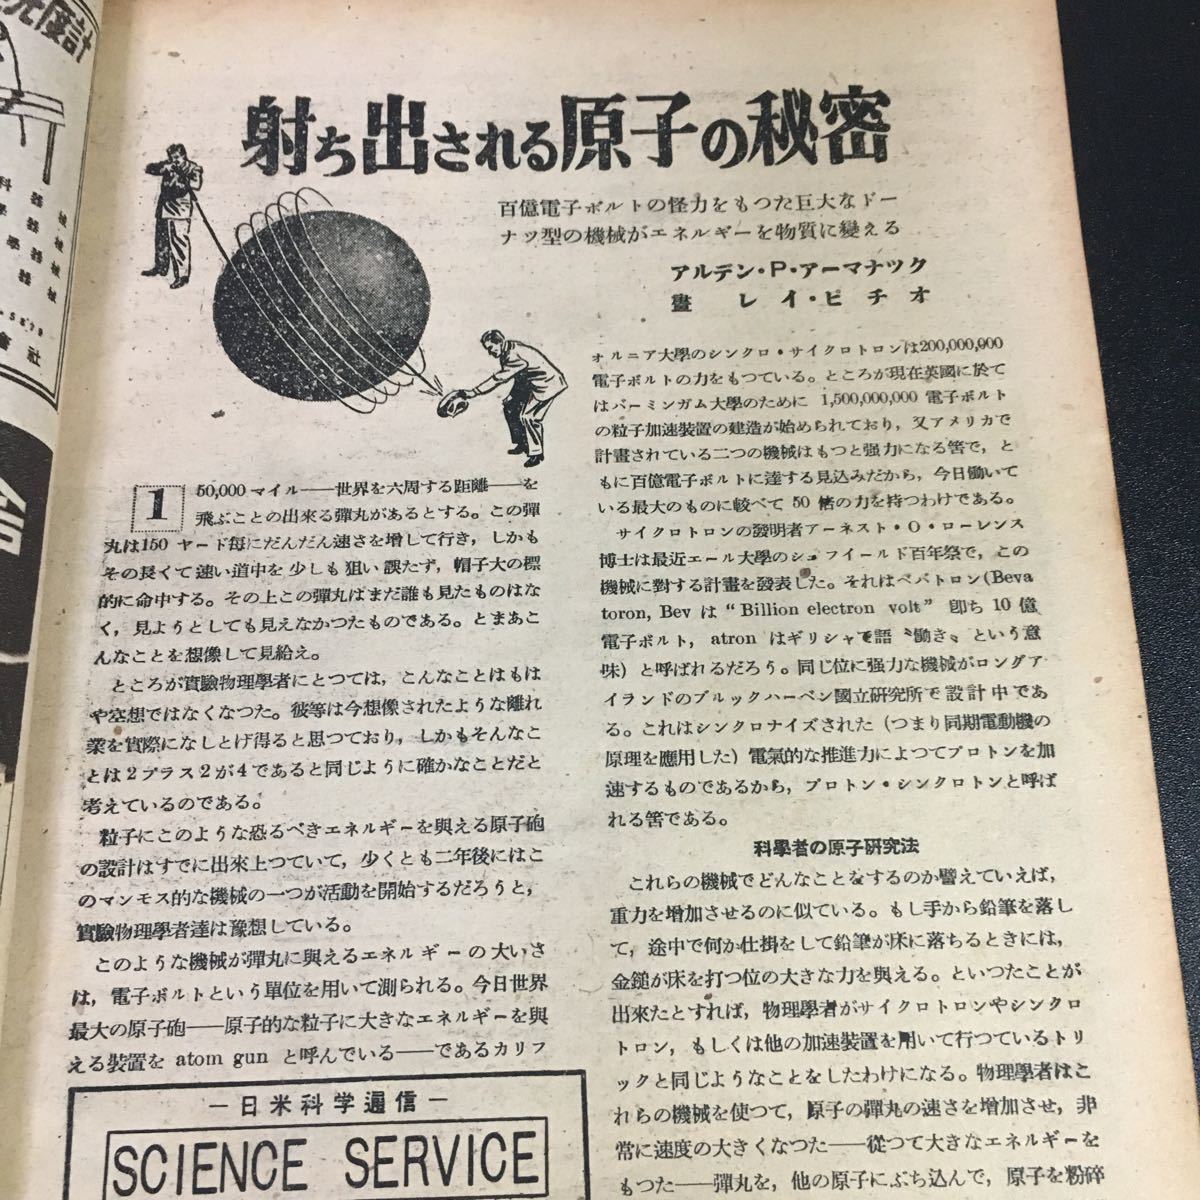  редкий![popyula* наука ] выпуск на японском языке Showa 23 год 6 месяц номер (1948 год ) no. 2 шт no. 7 номер 